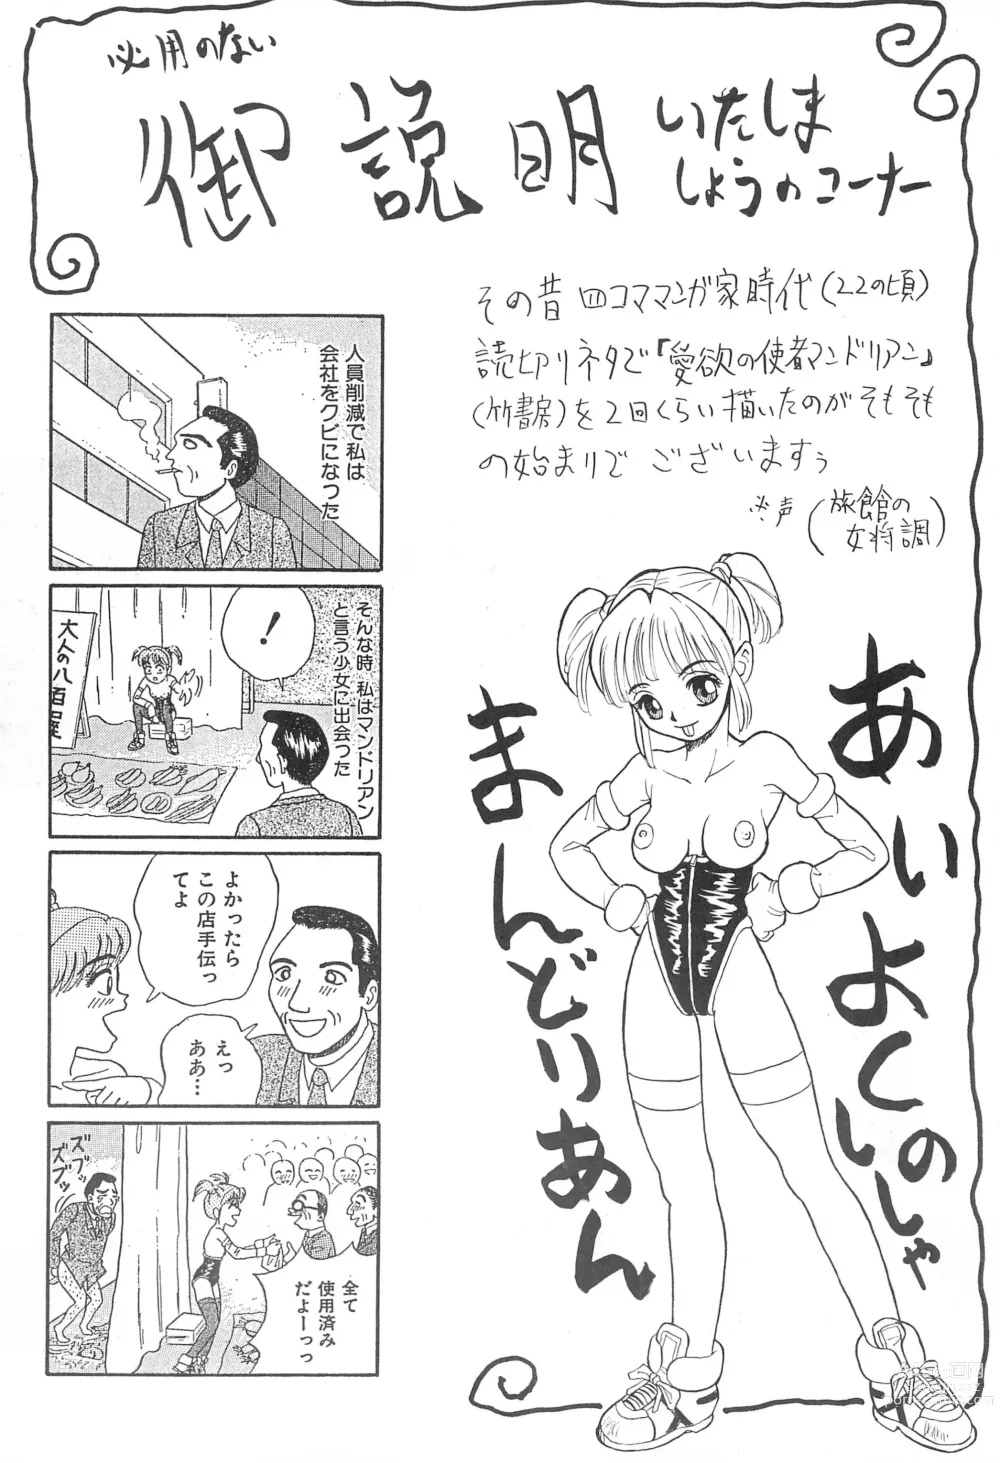 Page 4 of doujinshi Naninuneno